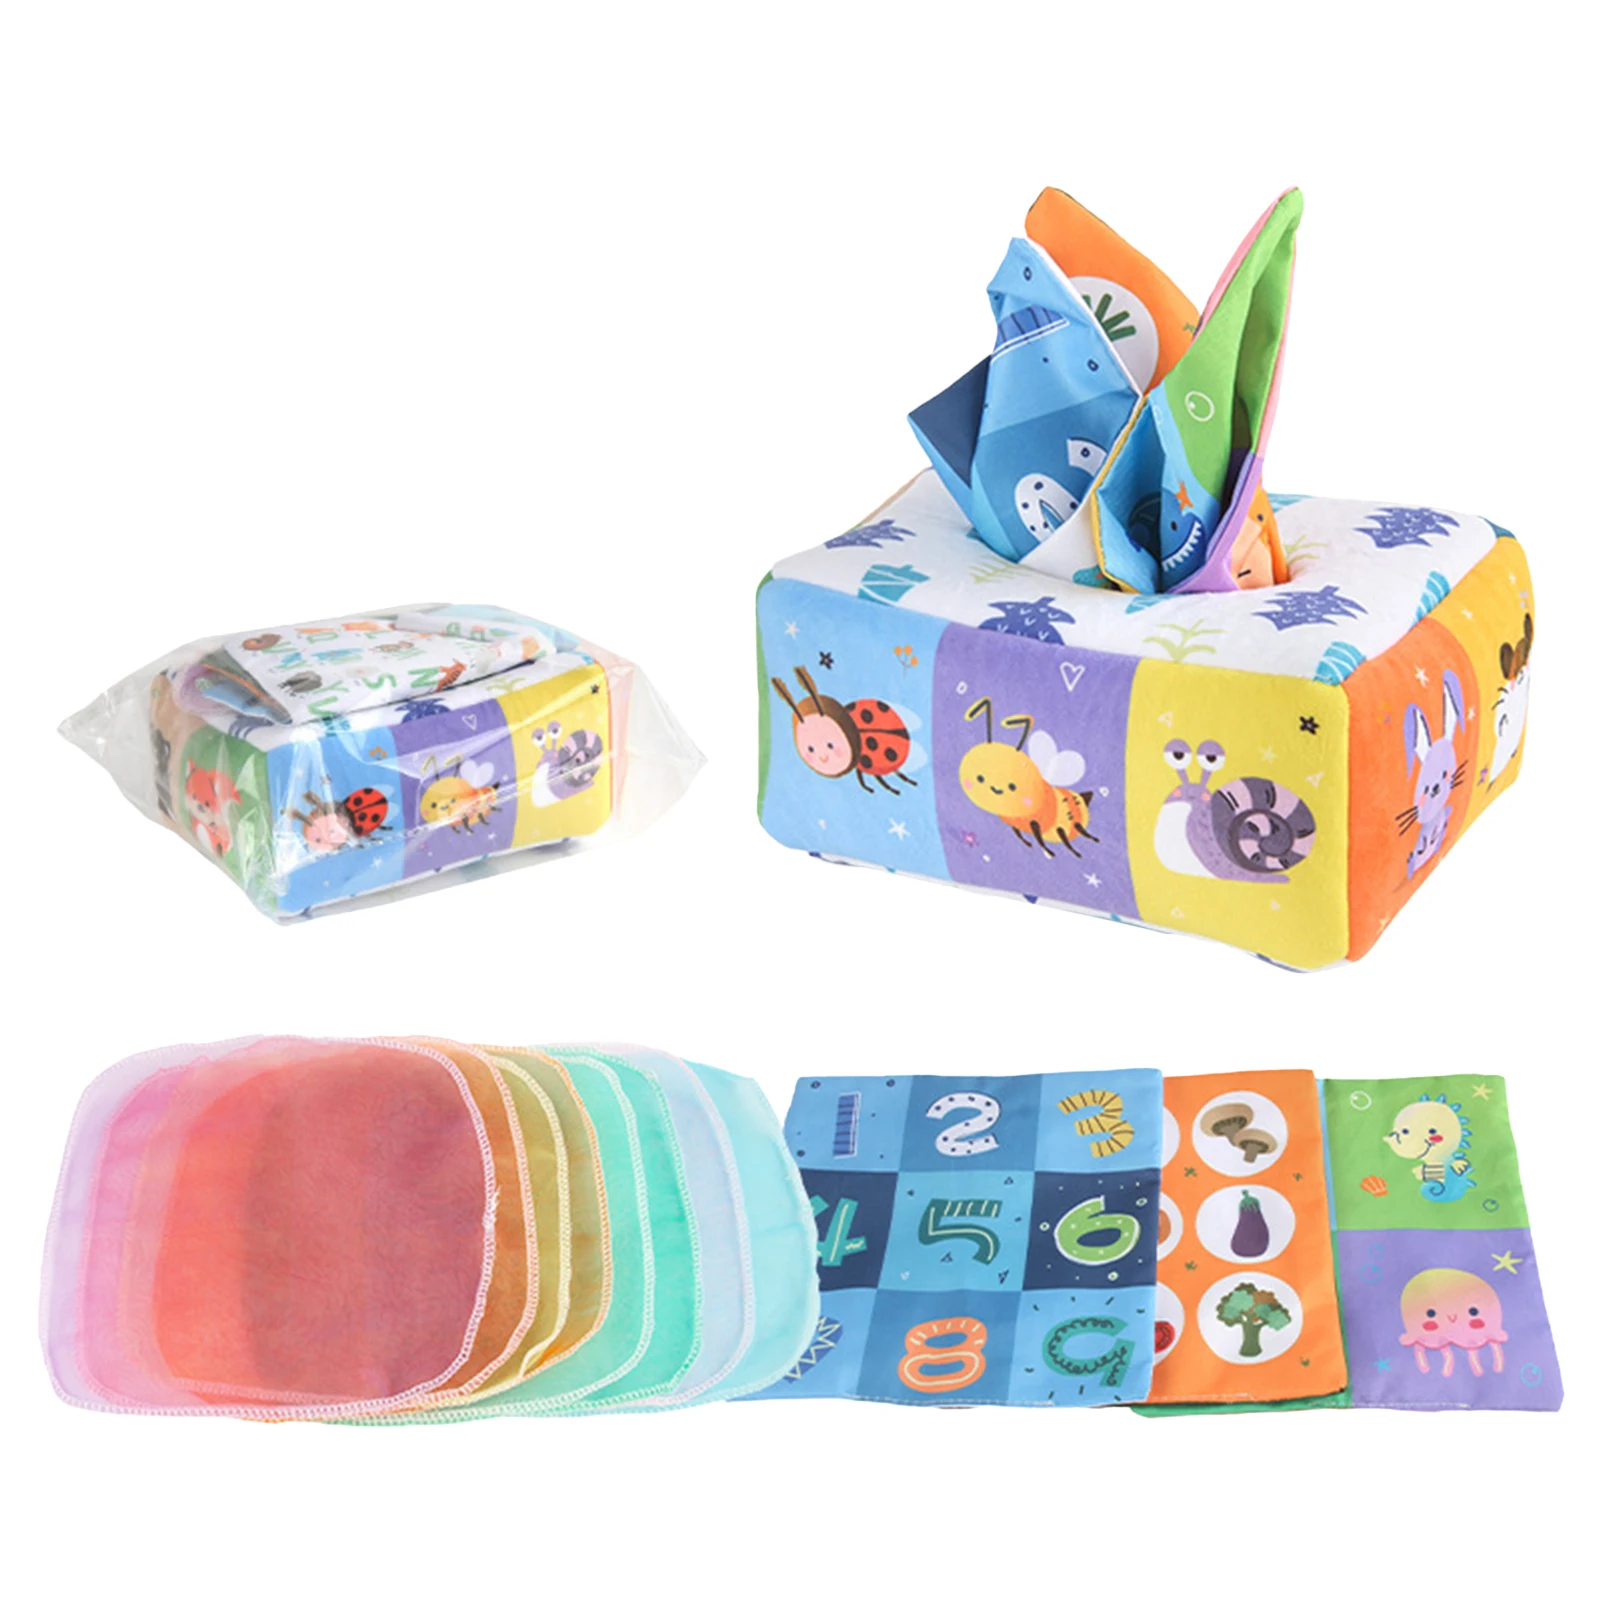 

Коробка для детских салфеток, игрушка, мягкие сенсорные игрушки для дошкольного обучения, игрушки Монтессори, игрушки, гофрированные игрушки, цветной мягкий шарф, коробка для 3, 6, 9